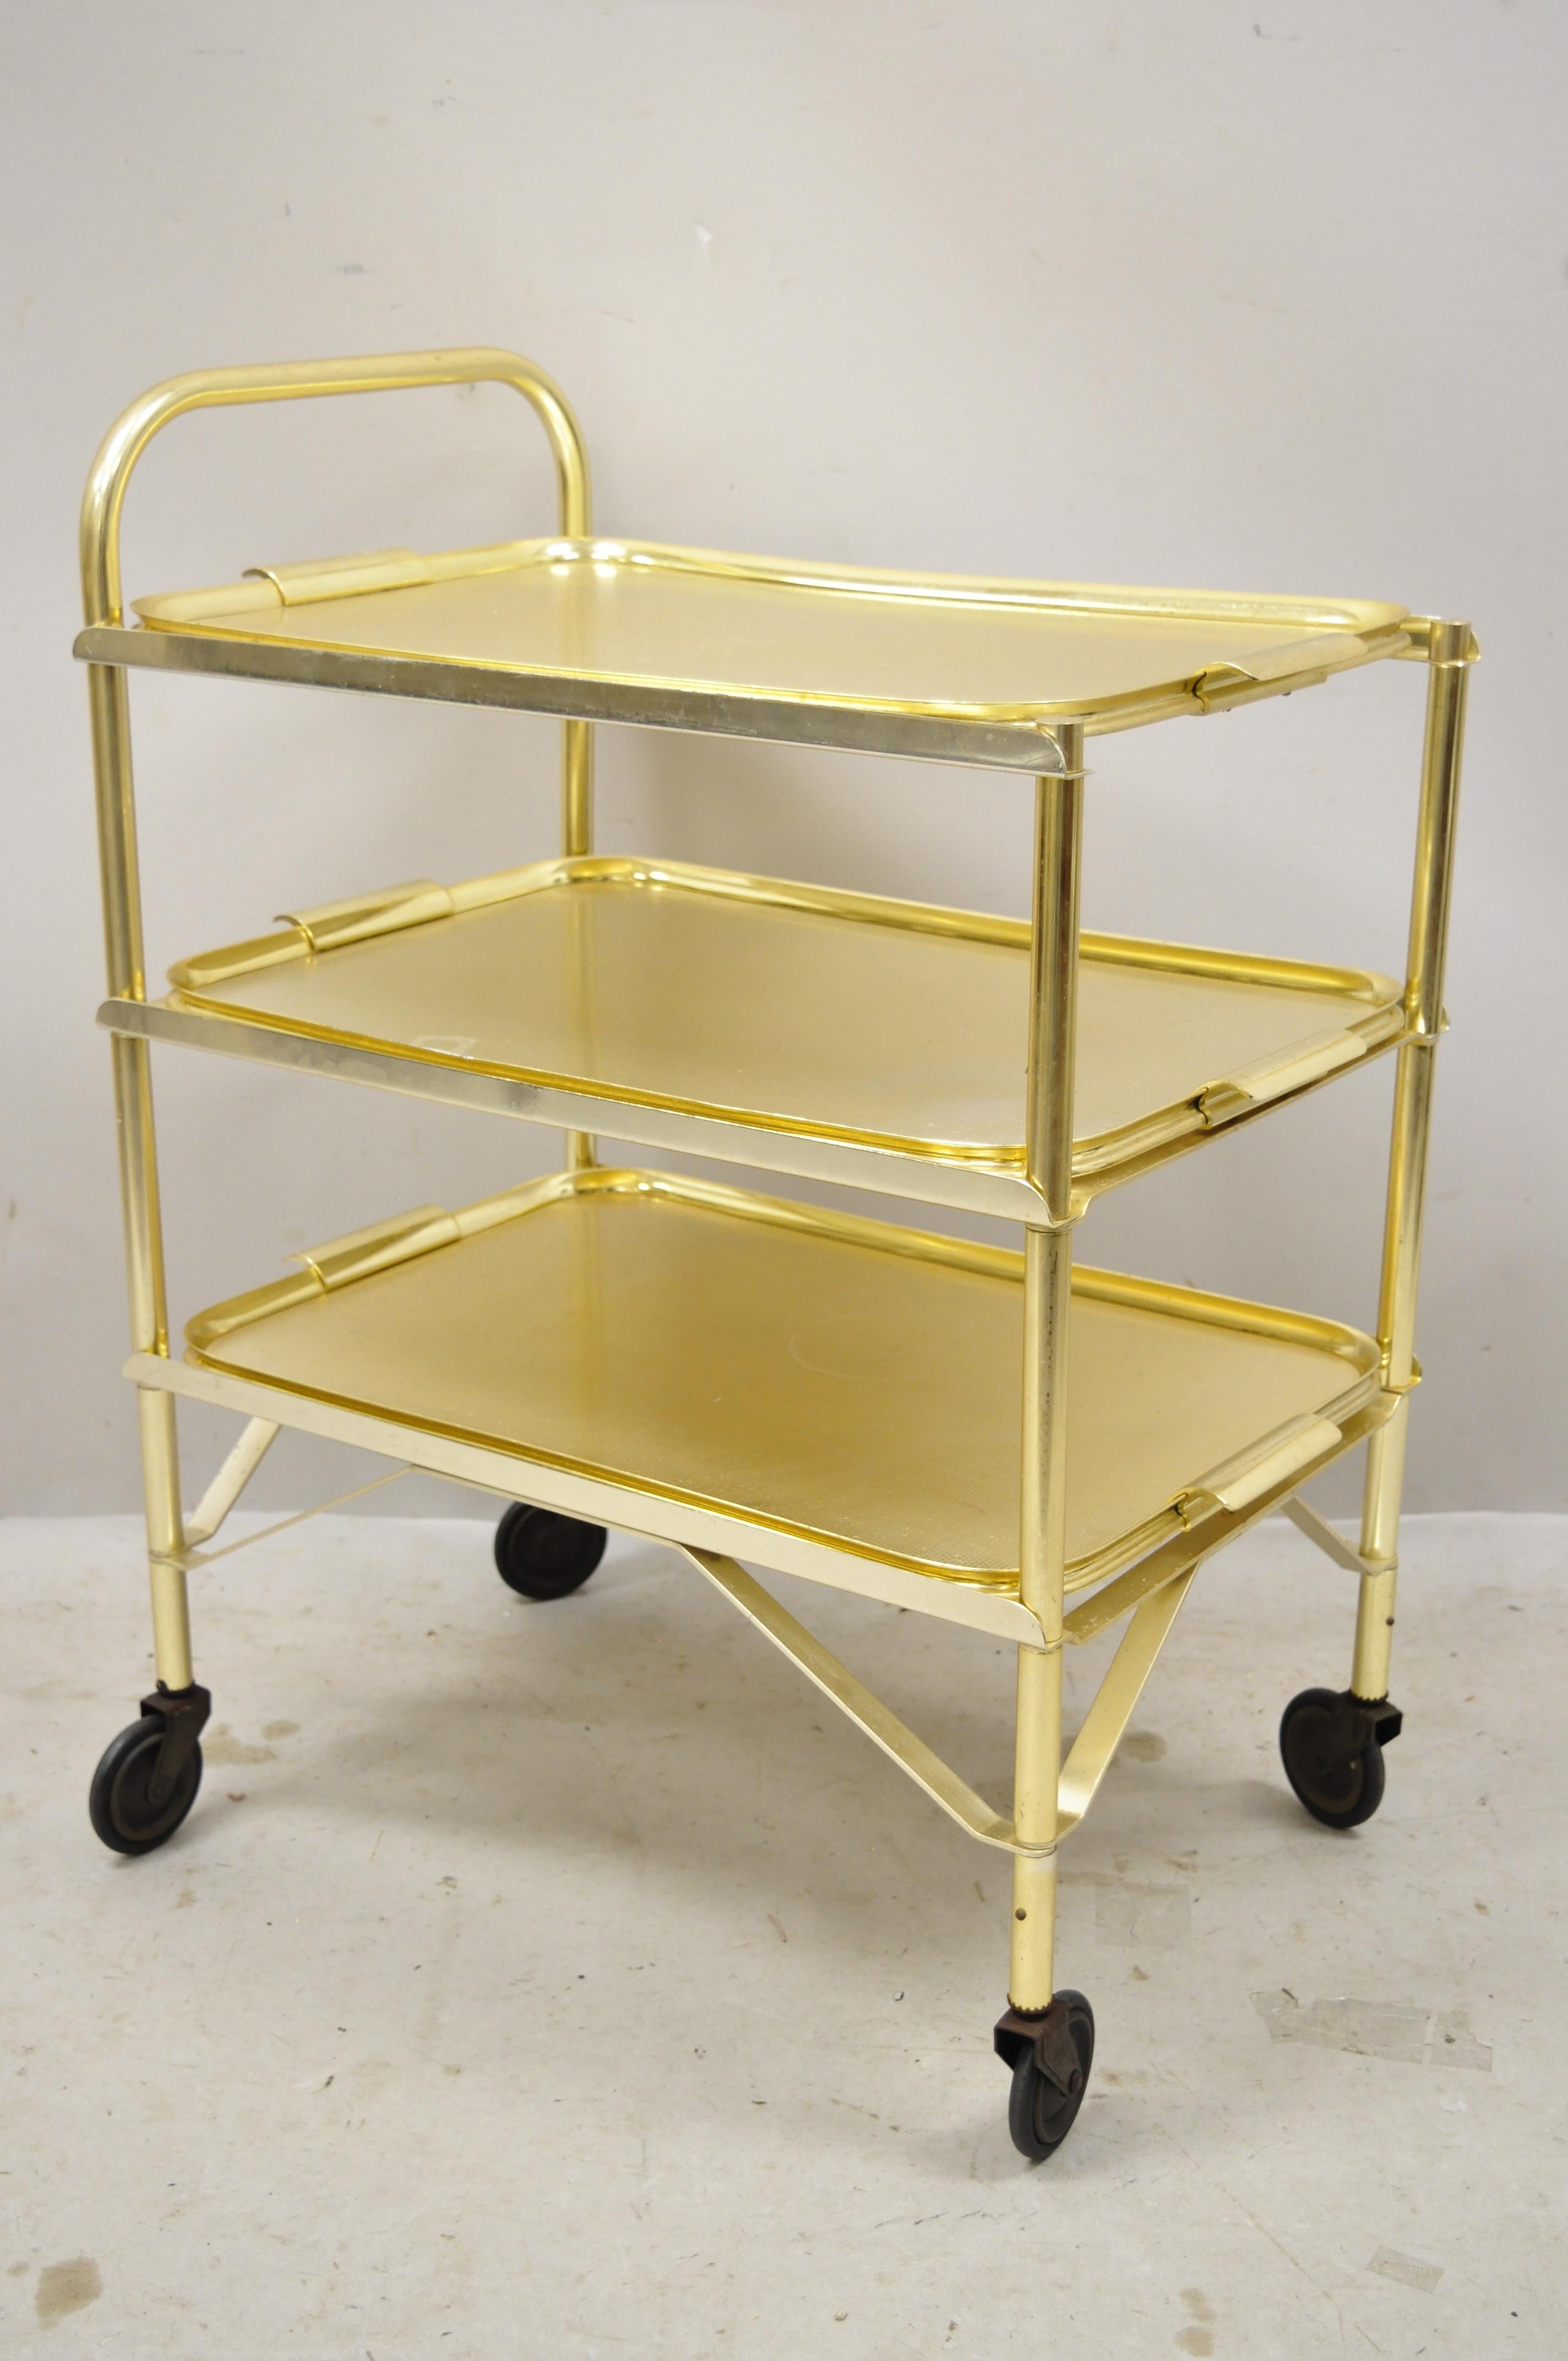 Midcentury gold aluminium metal folding rolling bar cart server with 3 trays. Der Artikel verfügt über 3 abnehmbare Tabletts, Rollen, Aluminiumguss-Konstruktion, klare modernistische Linien, großen Stil und Form, etwa Mitte des 20.